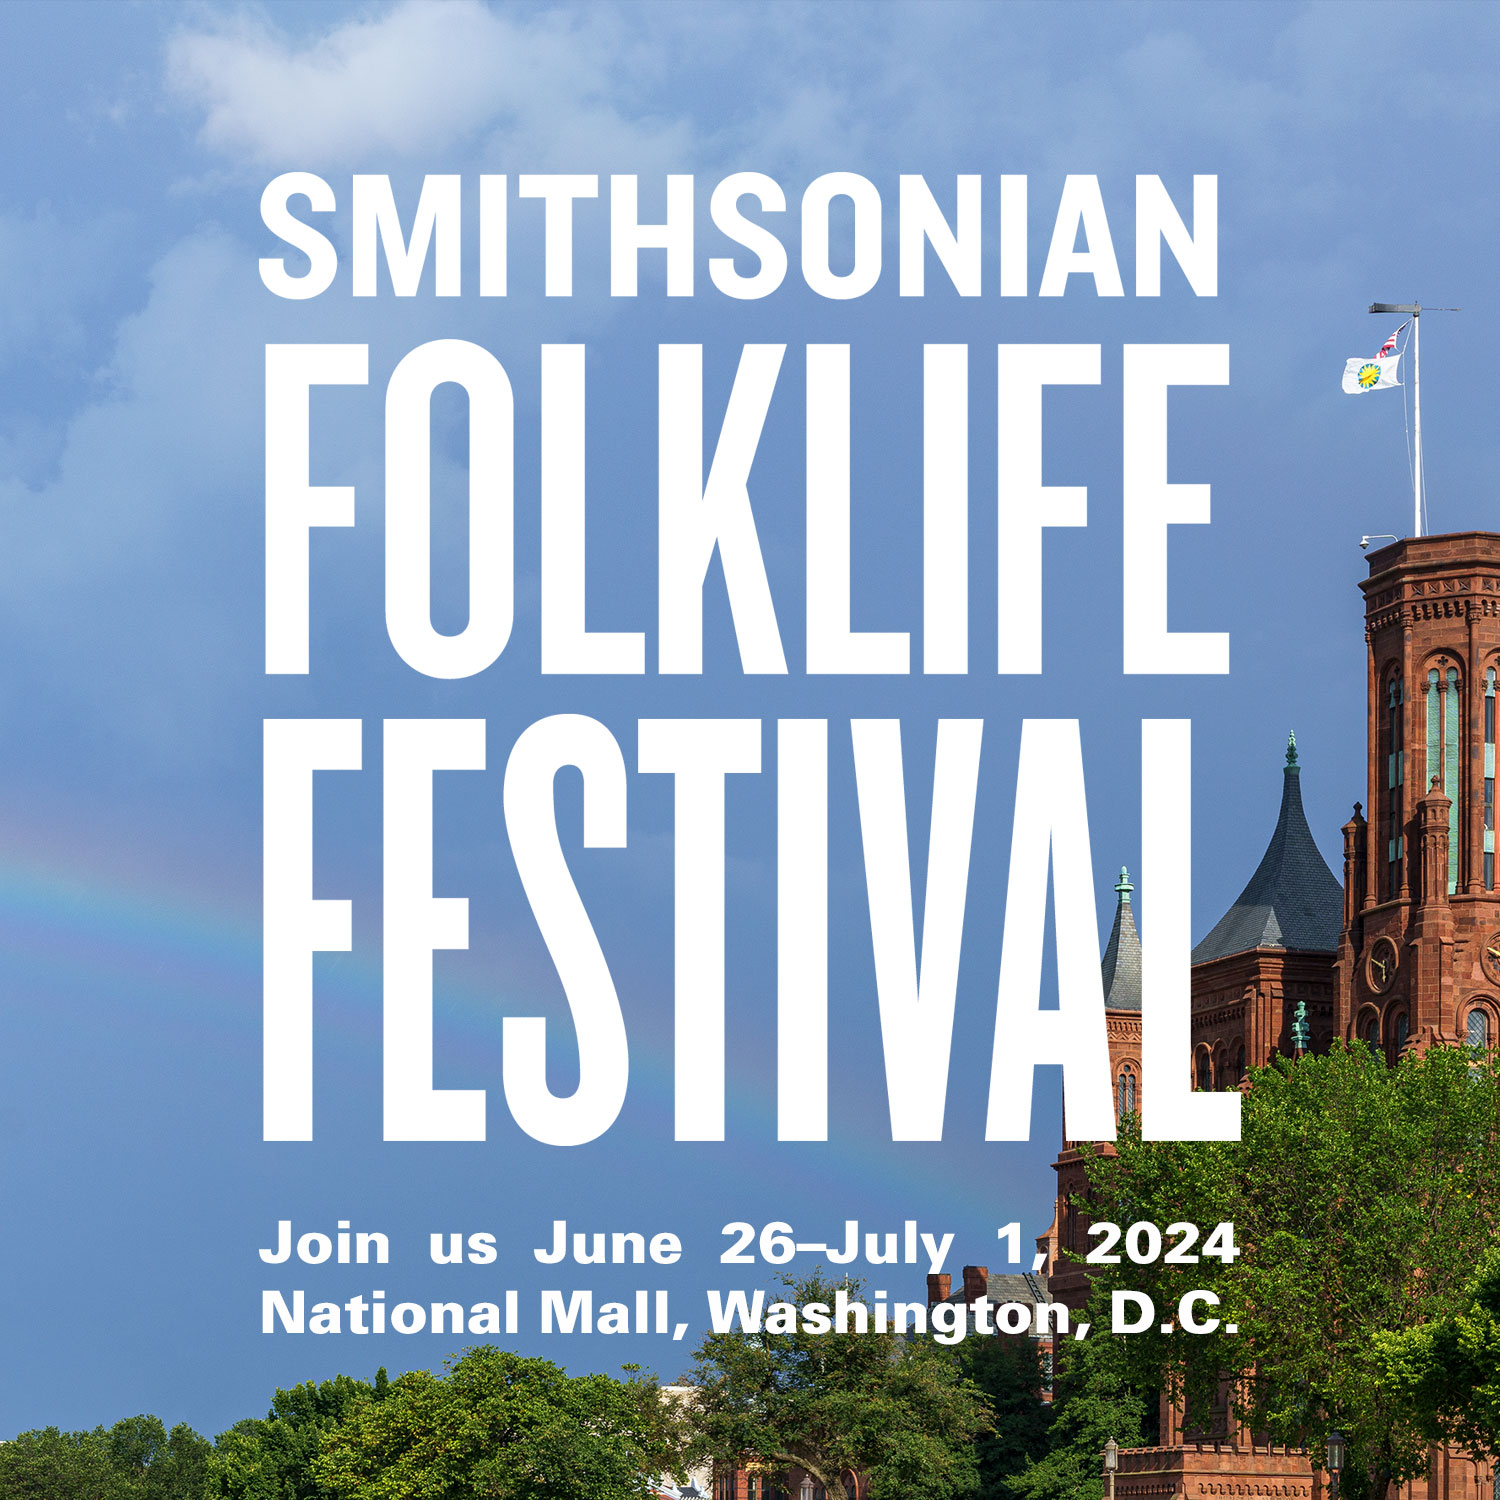 Smithsonian Folklife Festival Program To Highlight the Living